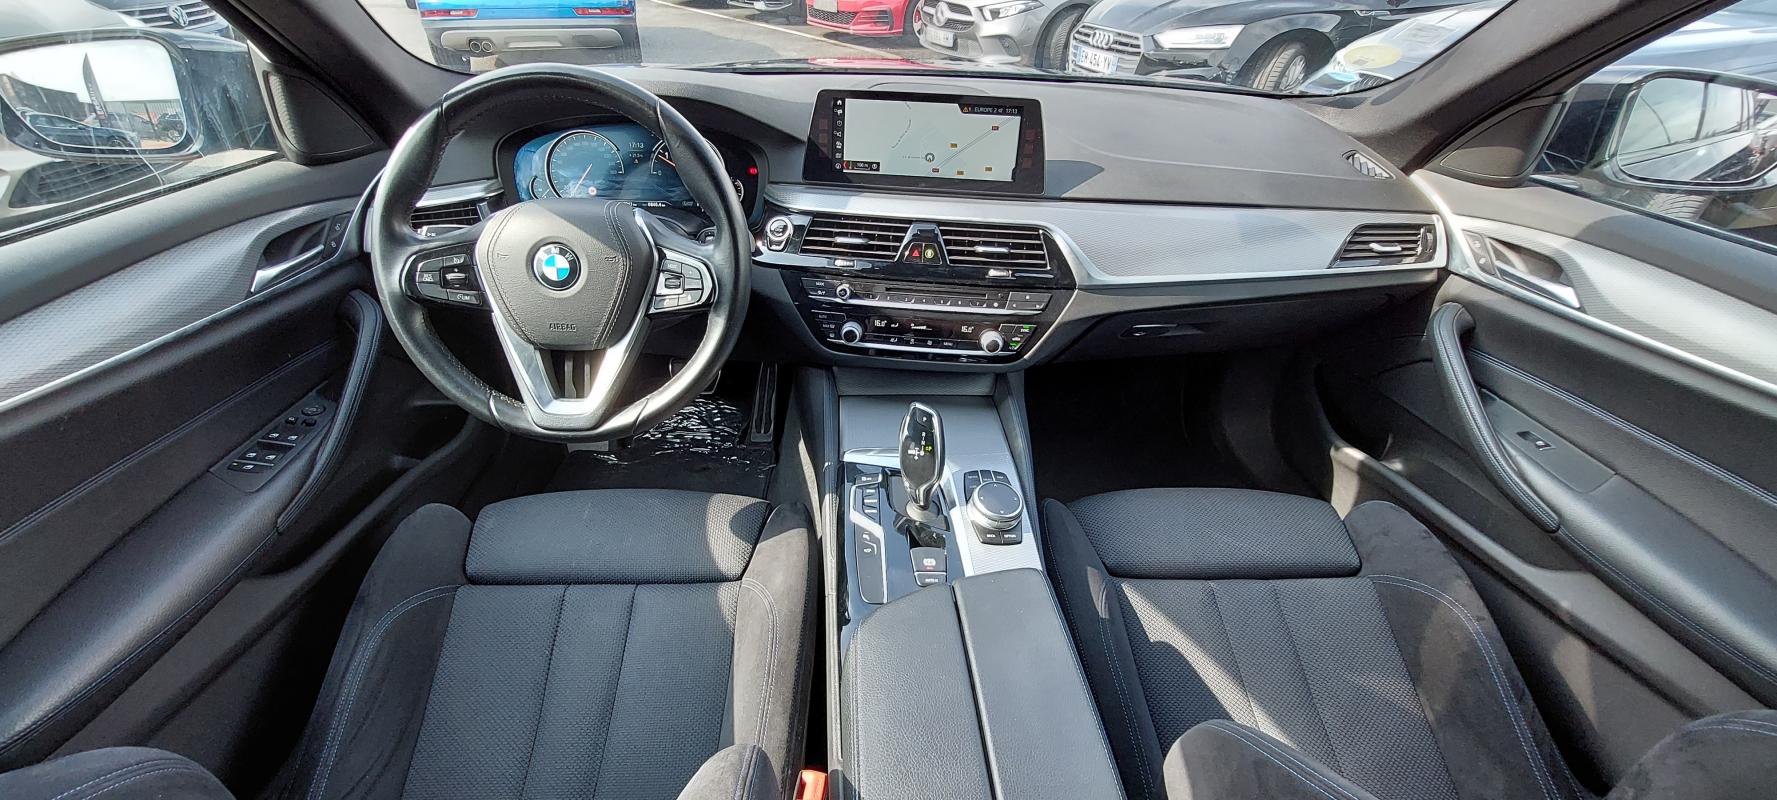 Intérieur extérieur BMW SERIE 5 TOURING NOIR CARBONE 